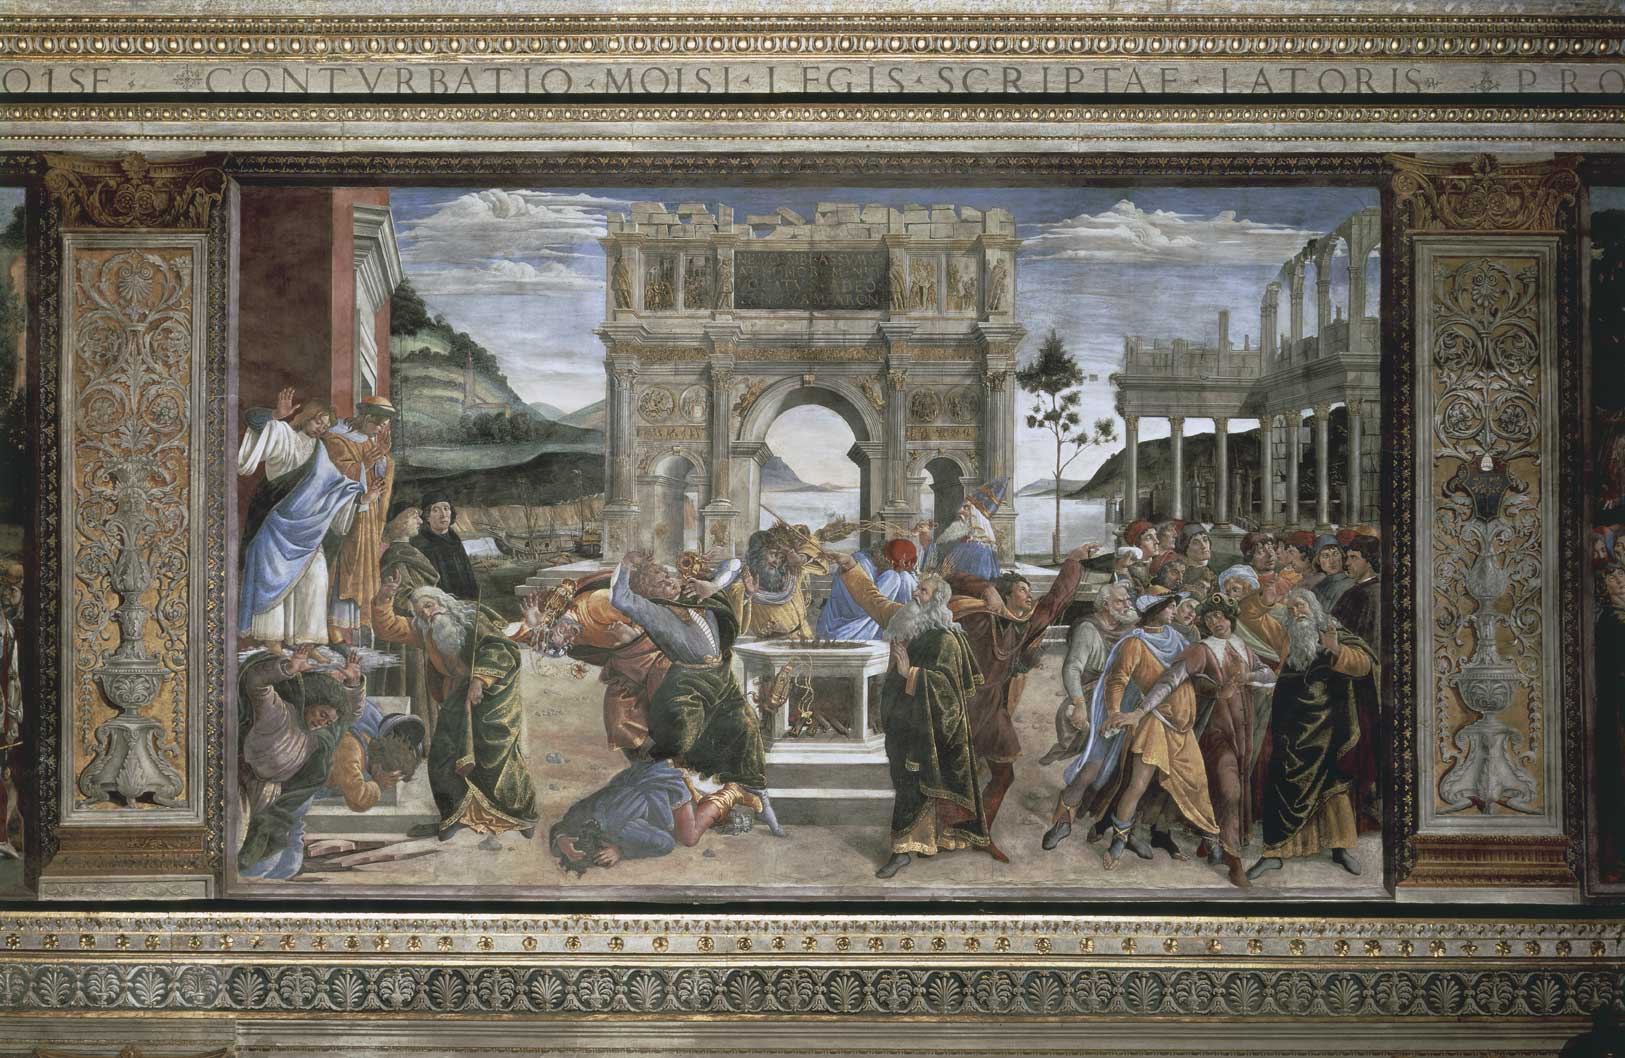 La punizione dei ribelli, Botticelli La punizione dei ribelli, 1480-1482, affresco di Sandro Botticelli (1445-1510) realizzato presso la Cappella Sistina in Vaticano.
© De Agostini Picture Library.